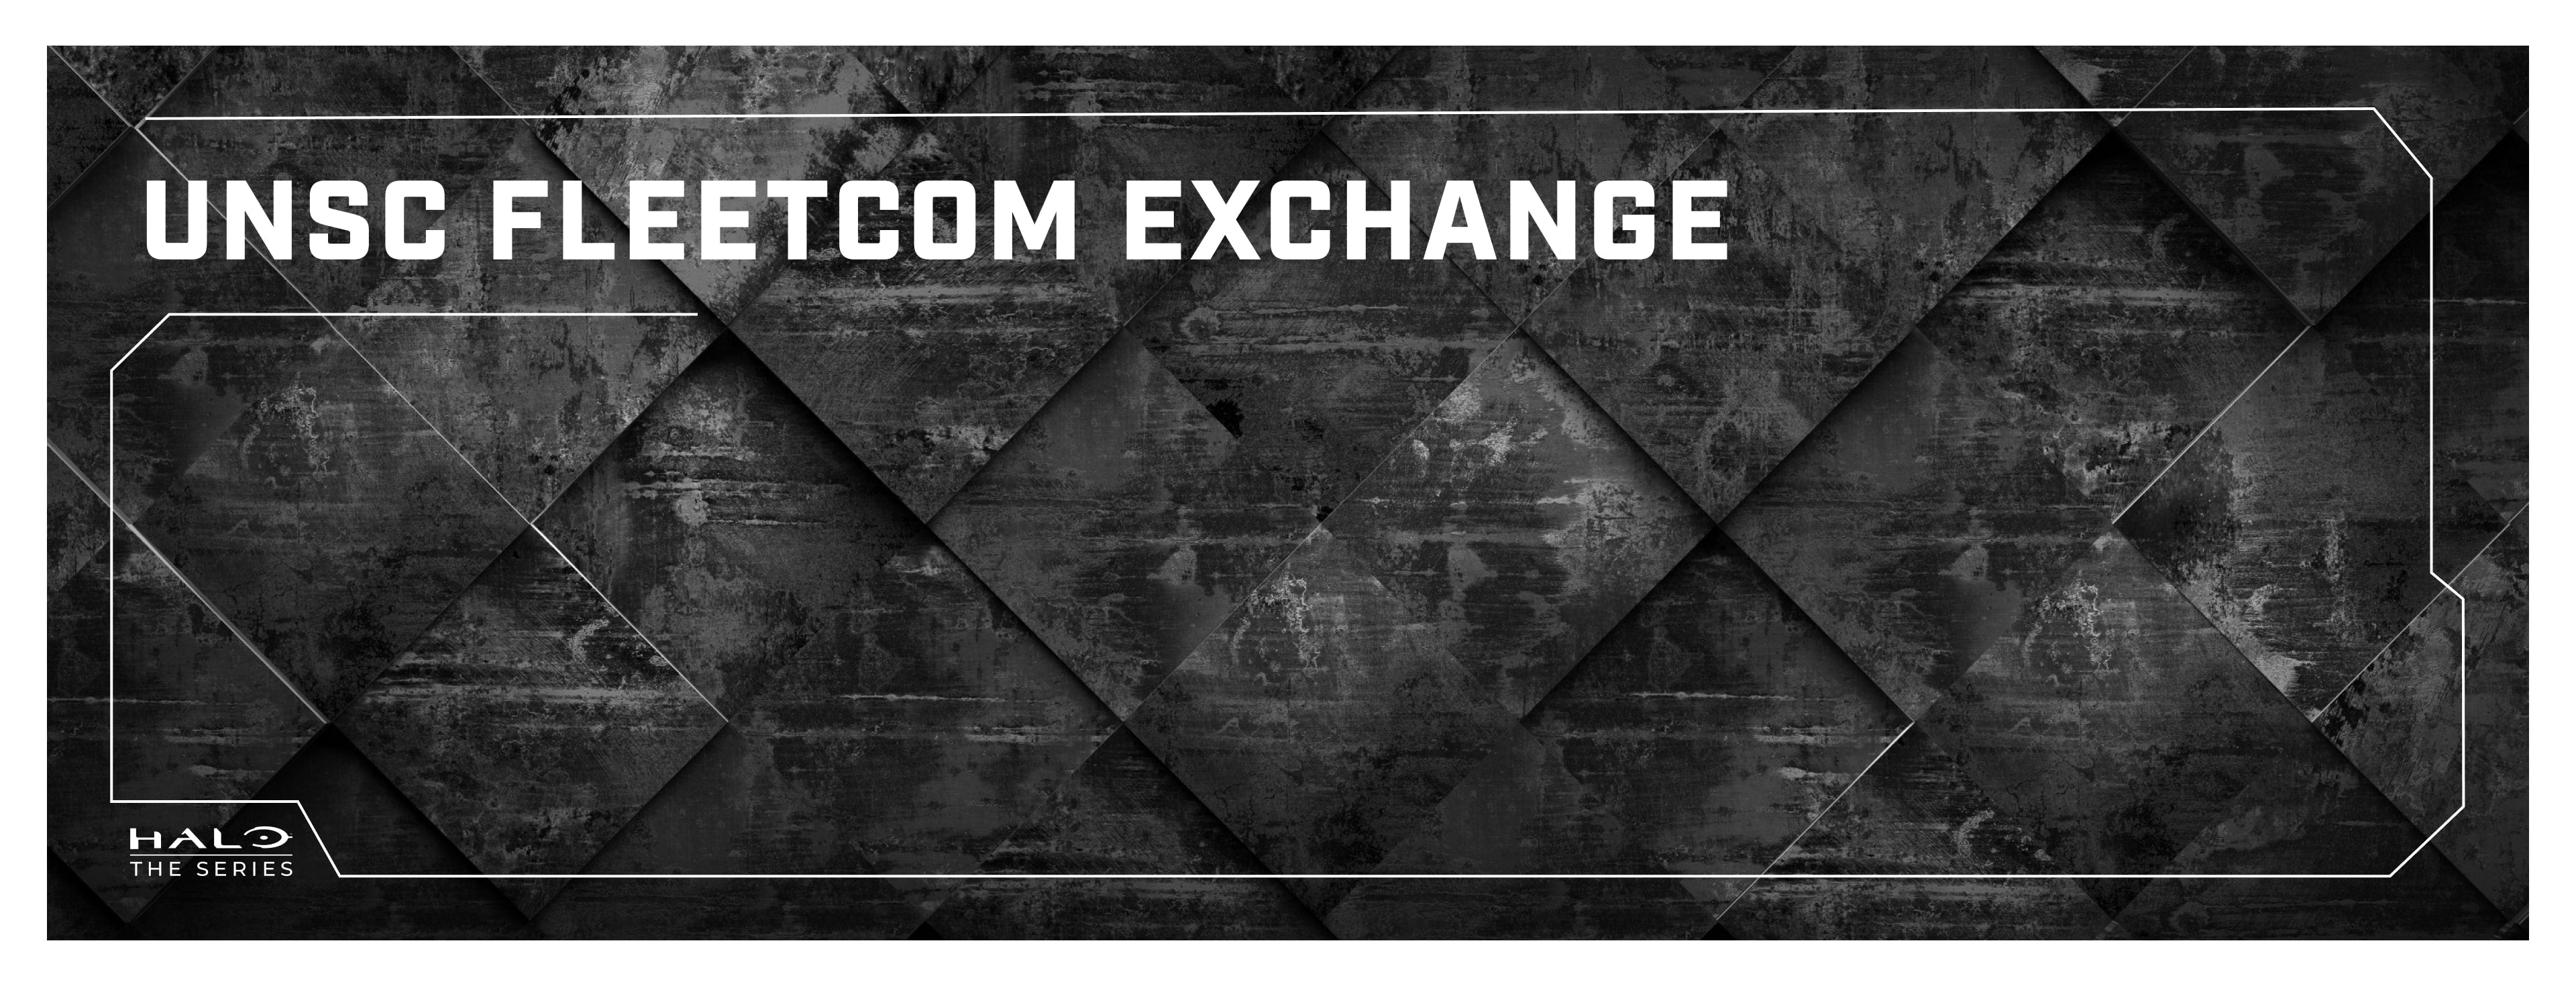 UNSC Fleetcom Exchange